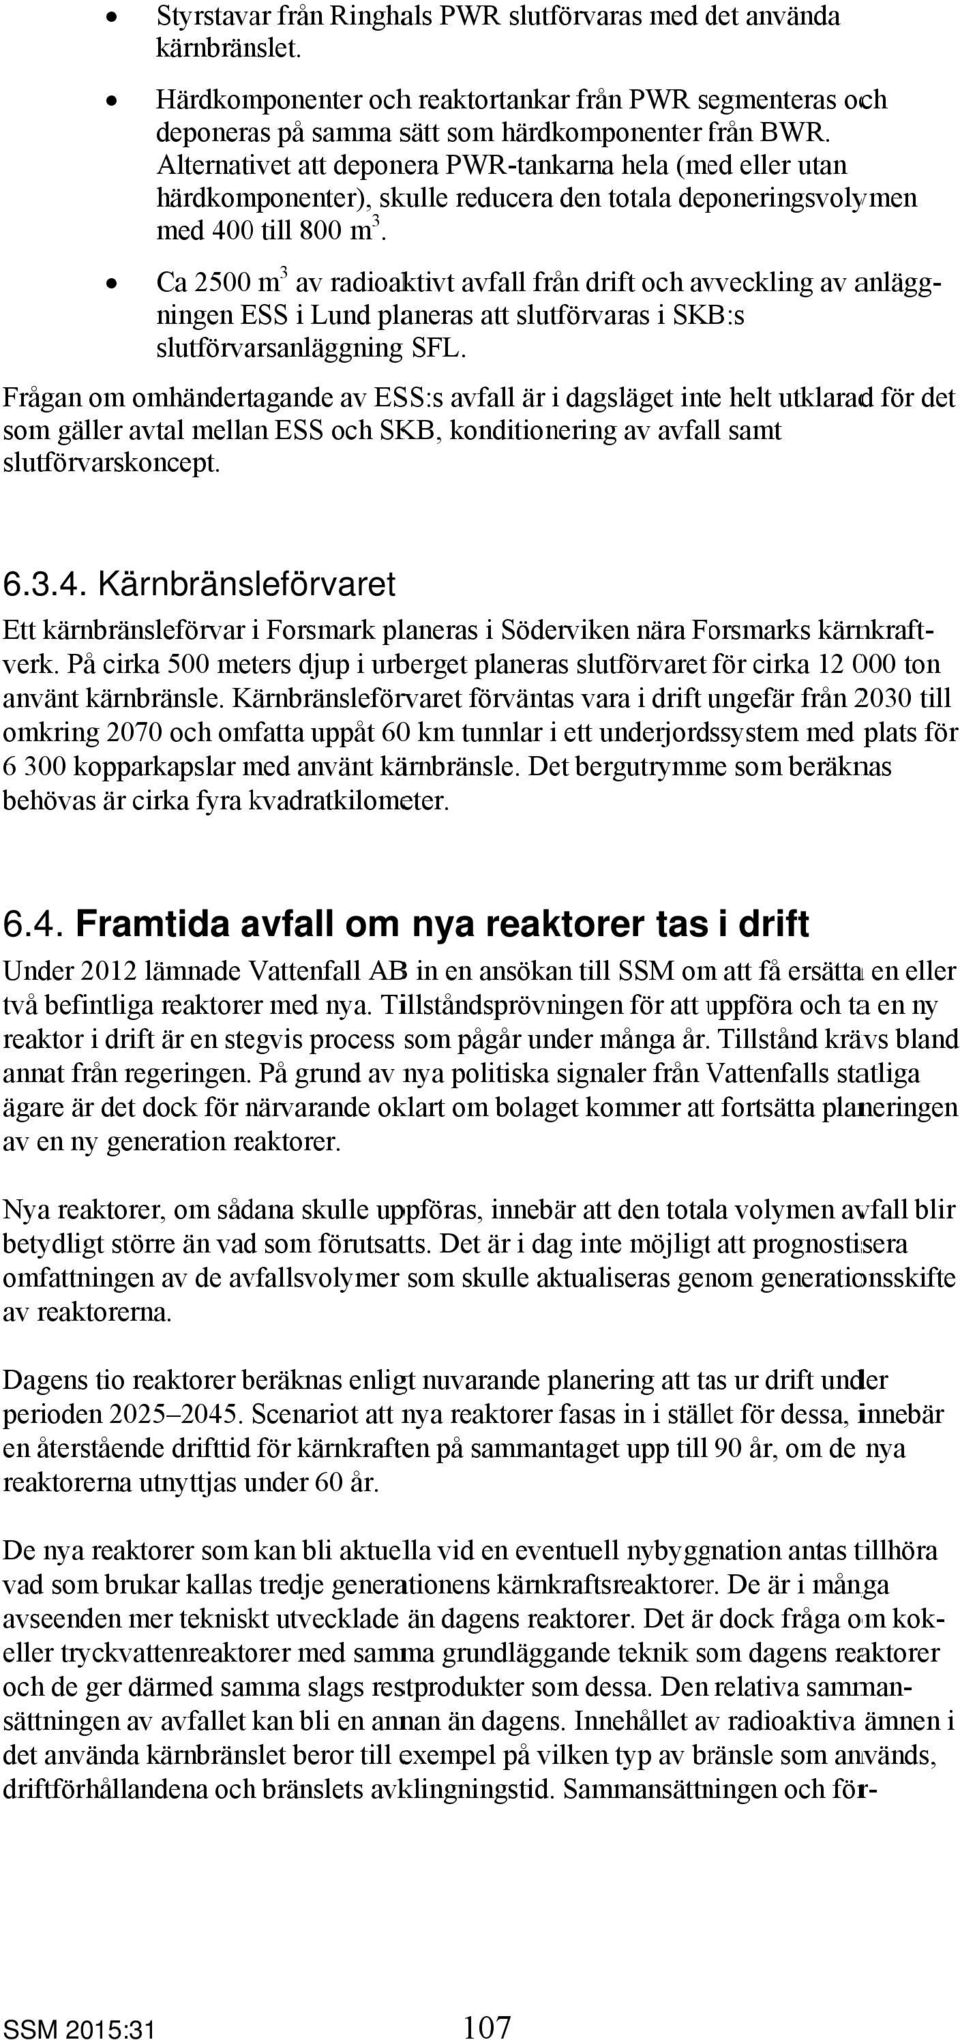 Ca 2500 m 3 av radioaktivt avfall från drift och avveckling av anlägg- för det ningen ESS i Lund planeras att slutförvaras i SKB:s slutförvarsanläggning SFL.